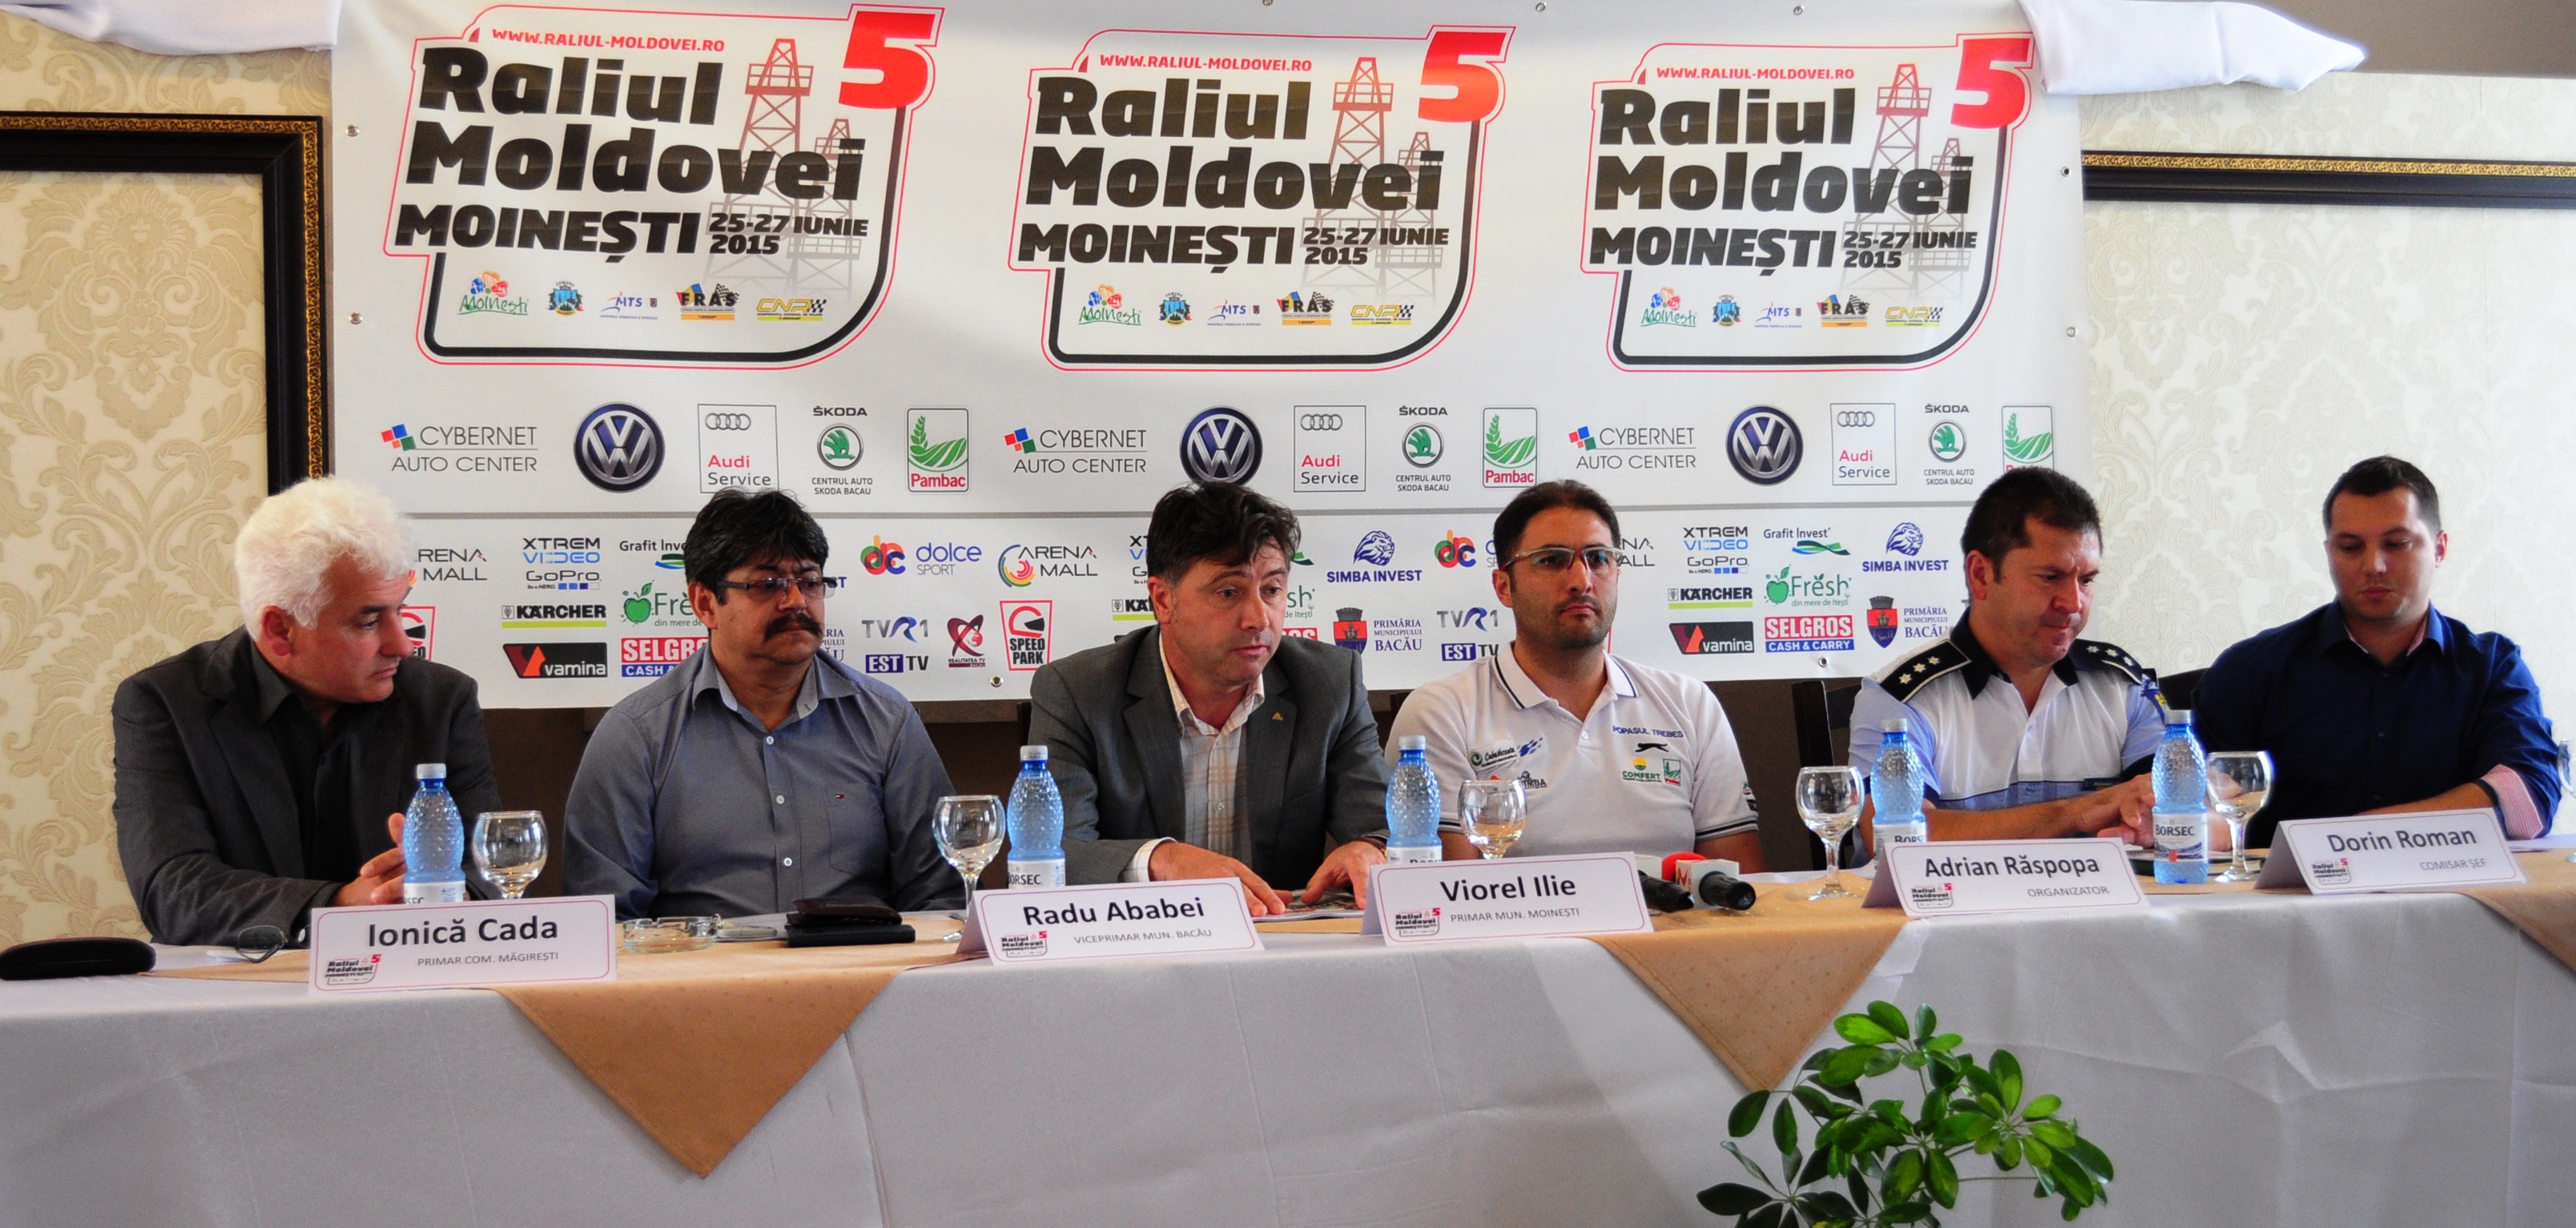 Start oficial in Raliul Moldovei Moinesti 2015